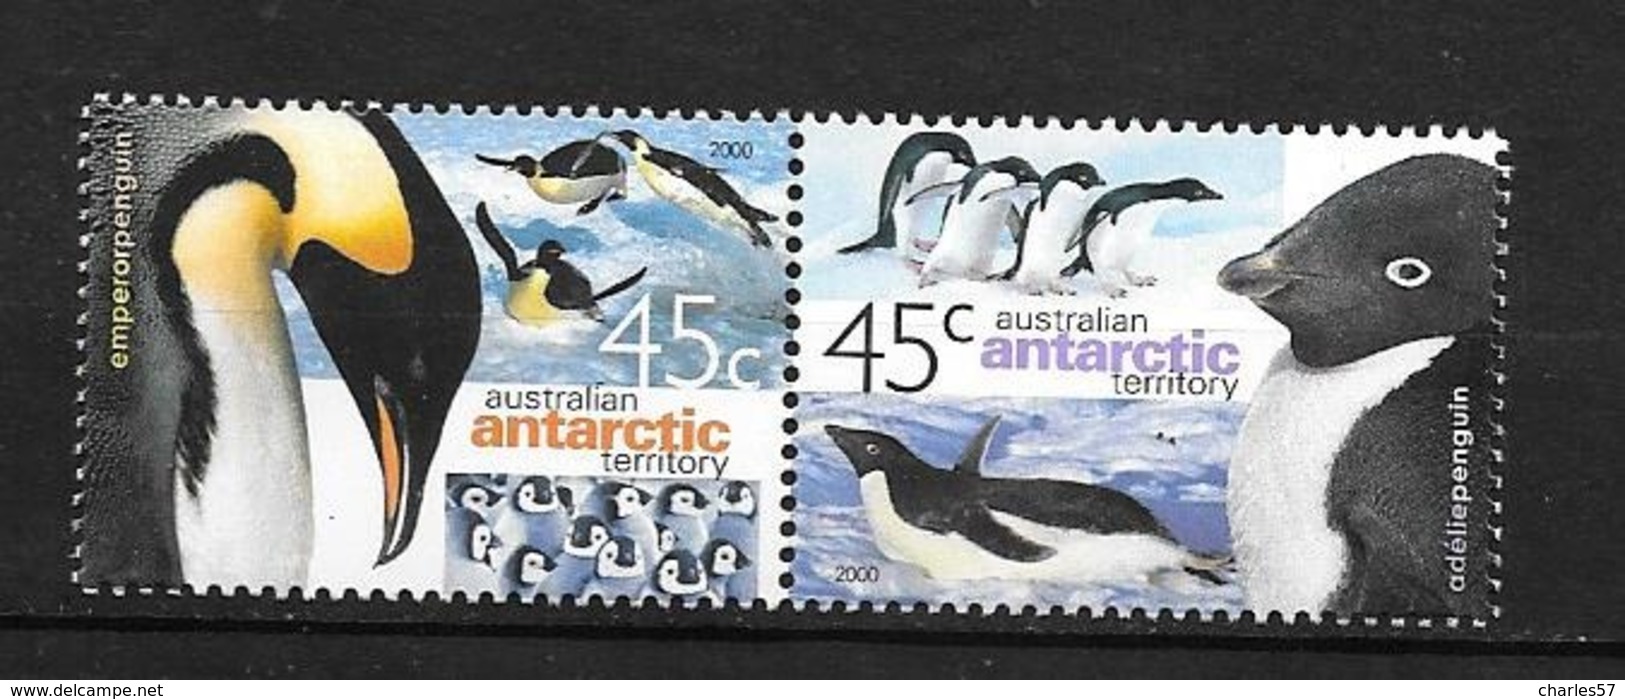 AUSTRALIE Territoire Antarctique 2000 - Yvert 123/24 - Manchot Empereur - Neuf ** - Unused Stamps